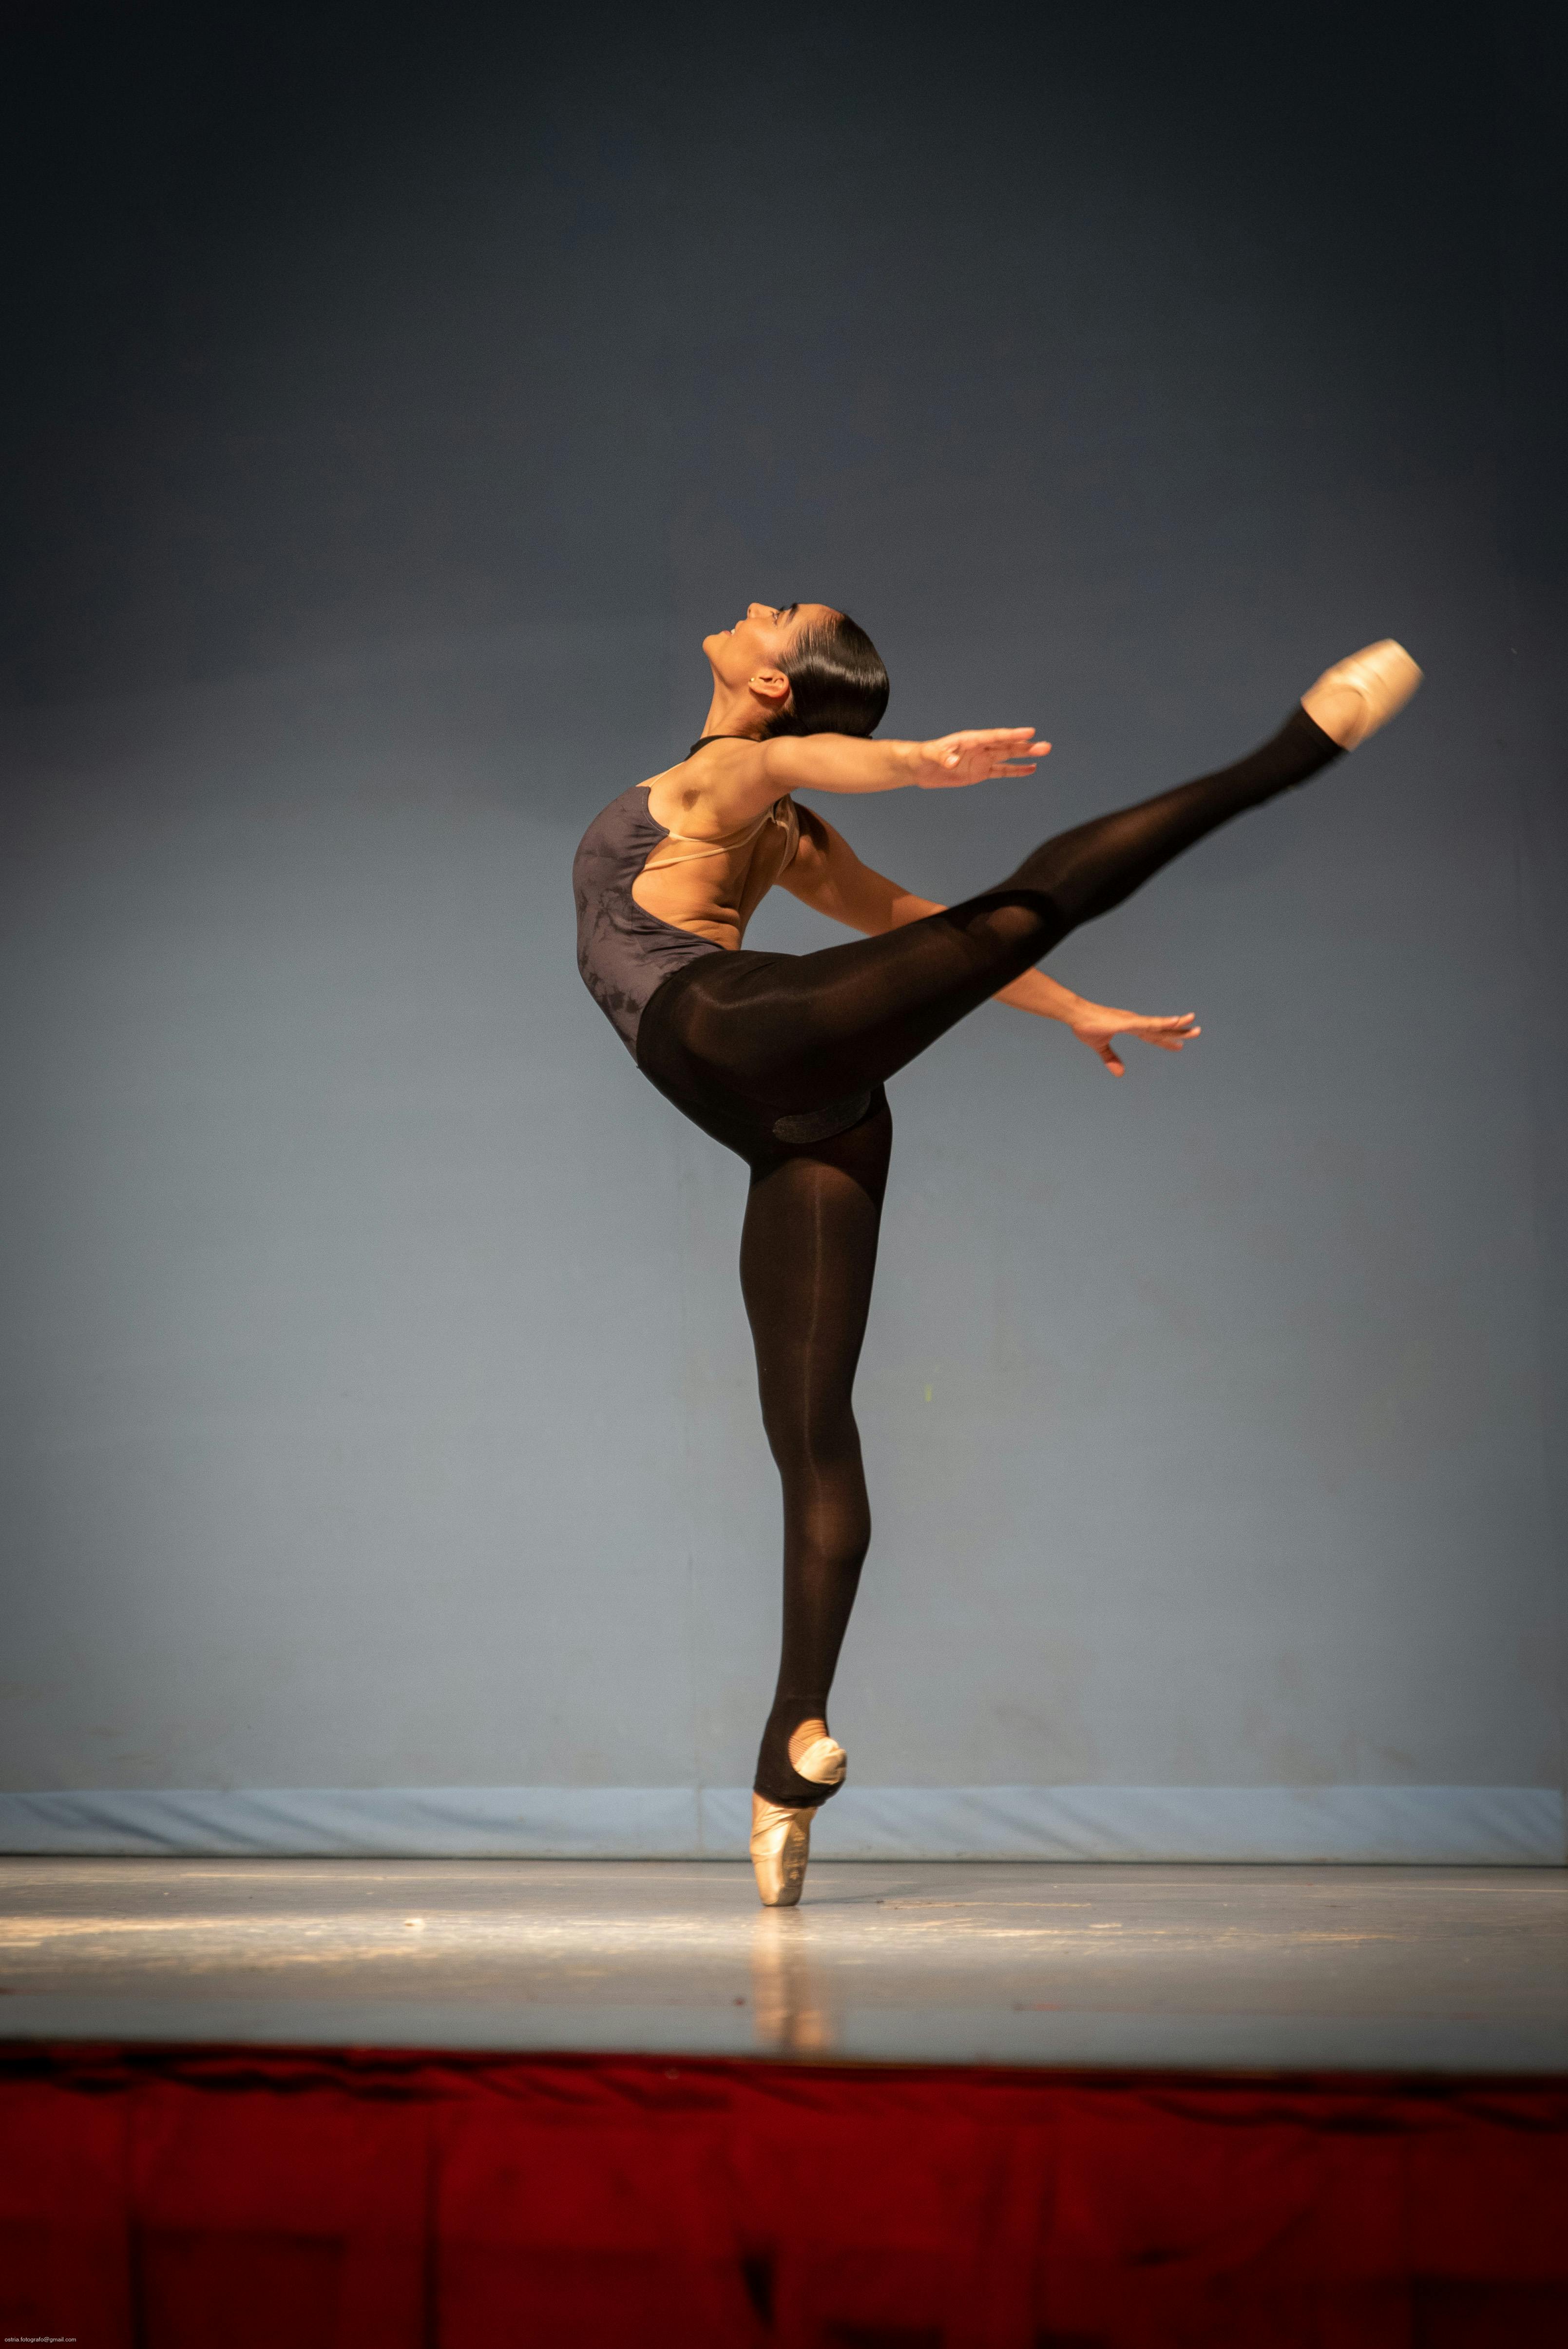 ArtStation - New Ballet Poses